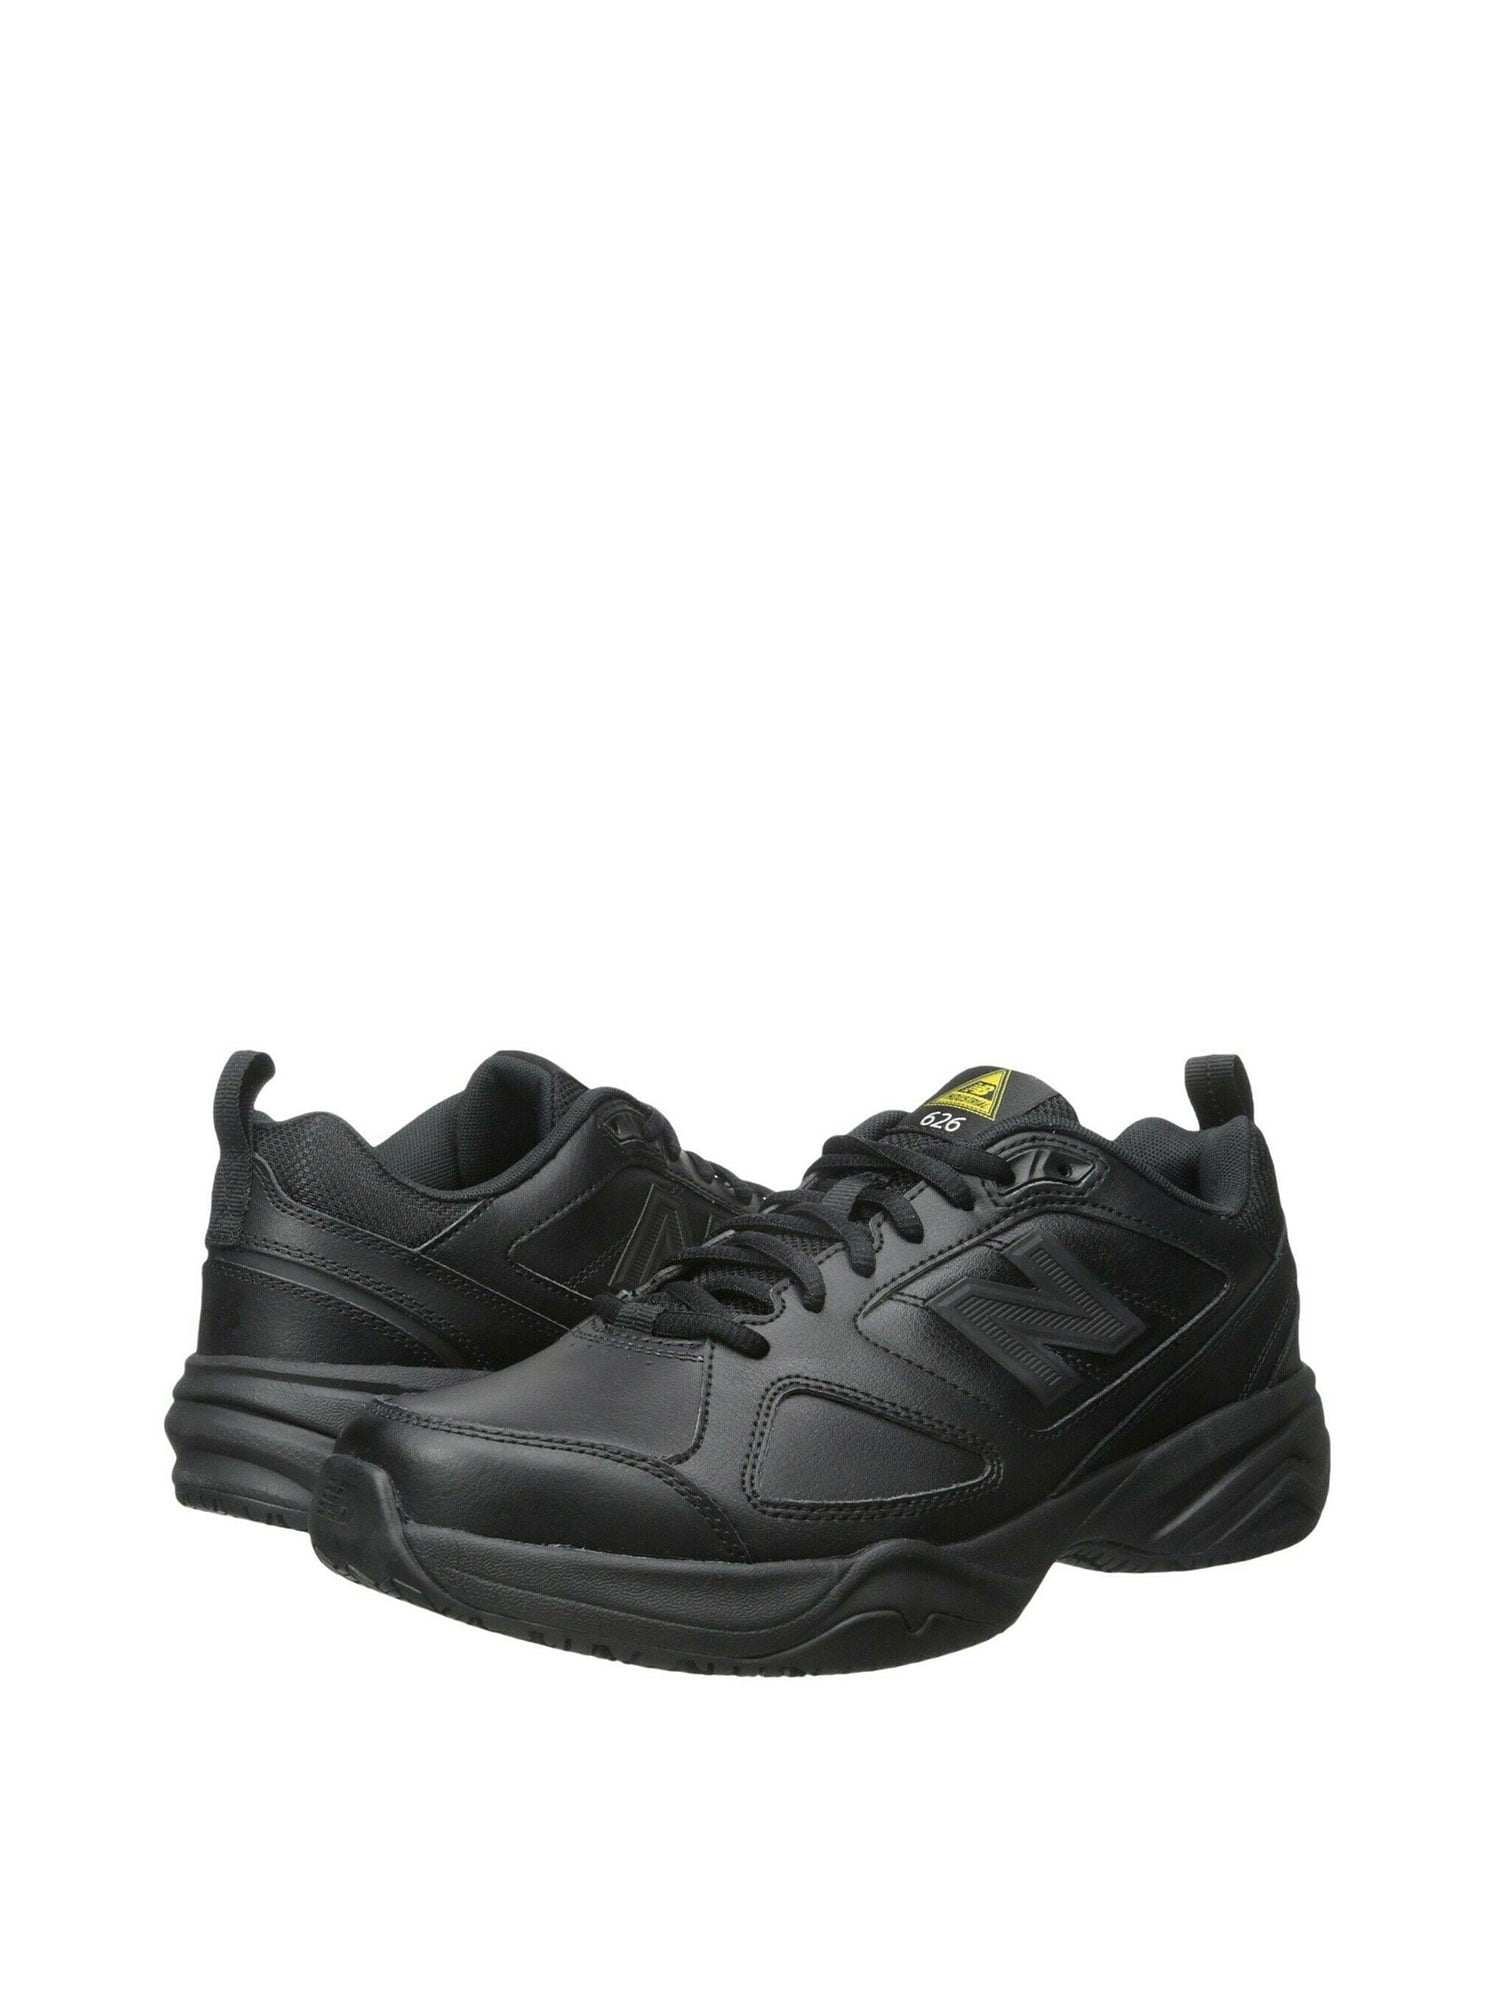 626v2 work shoe